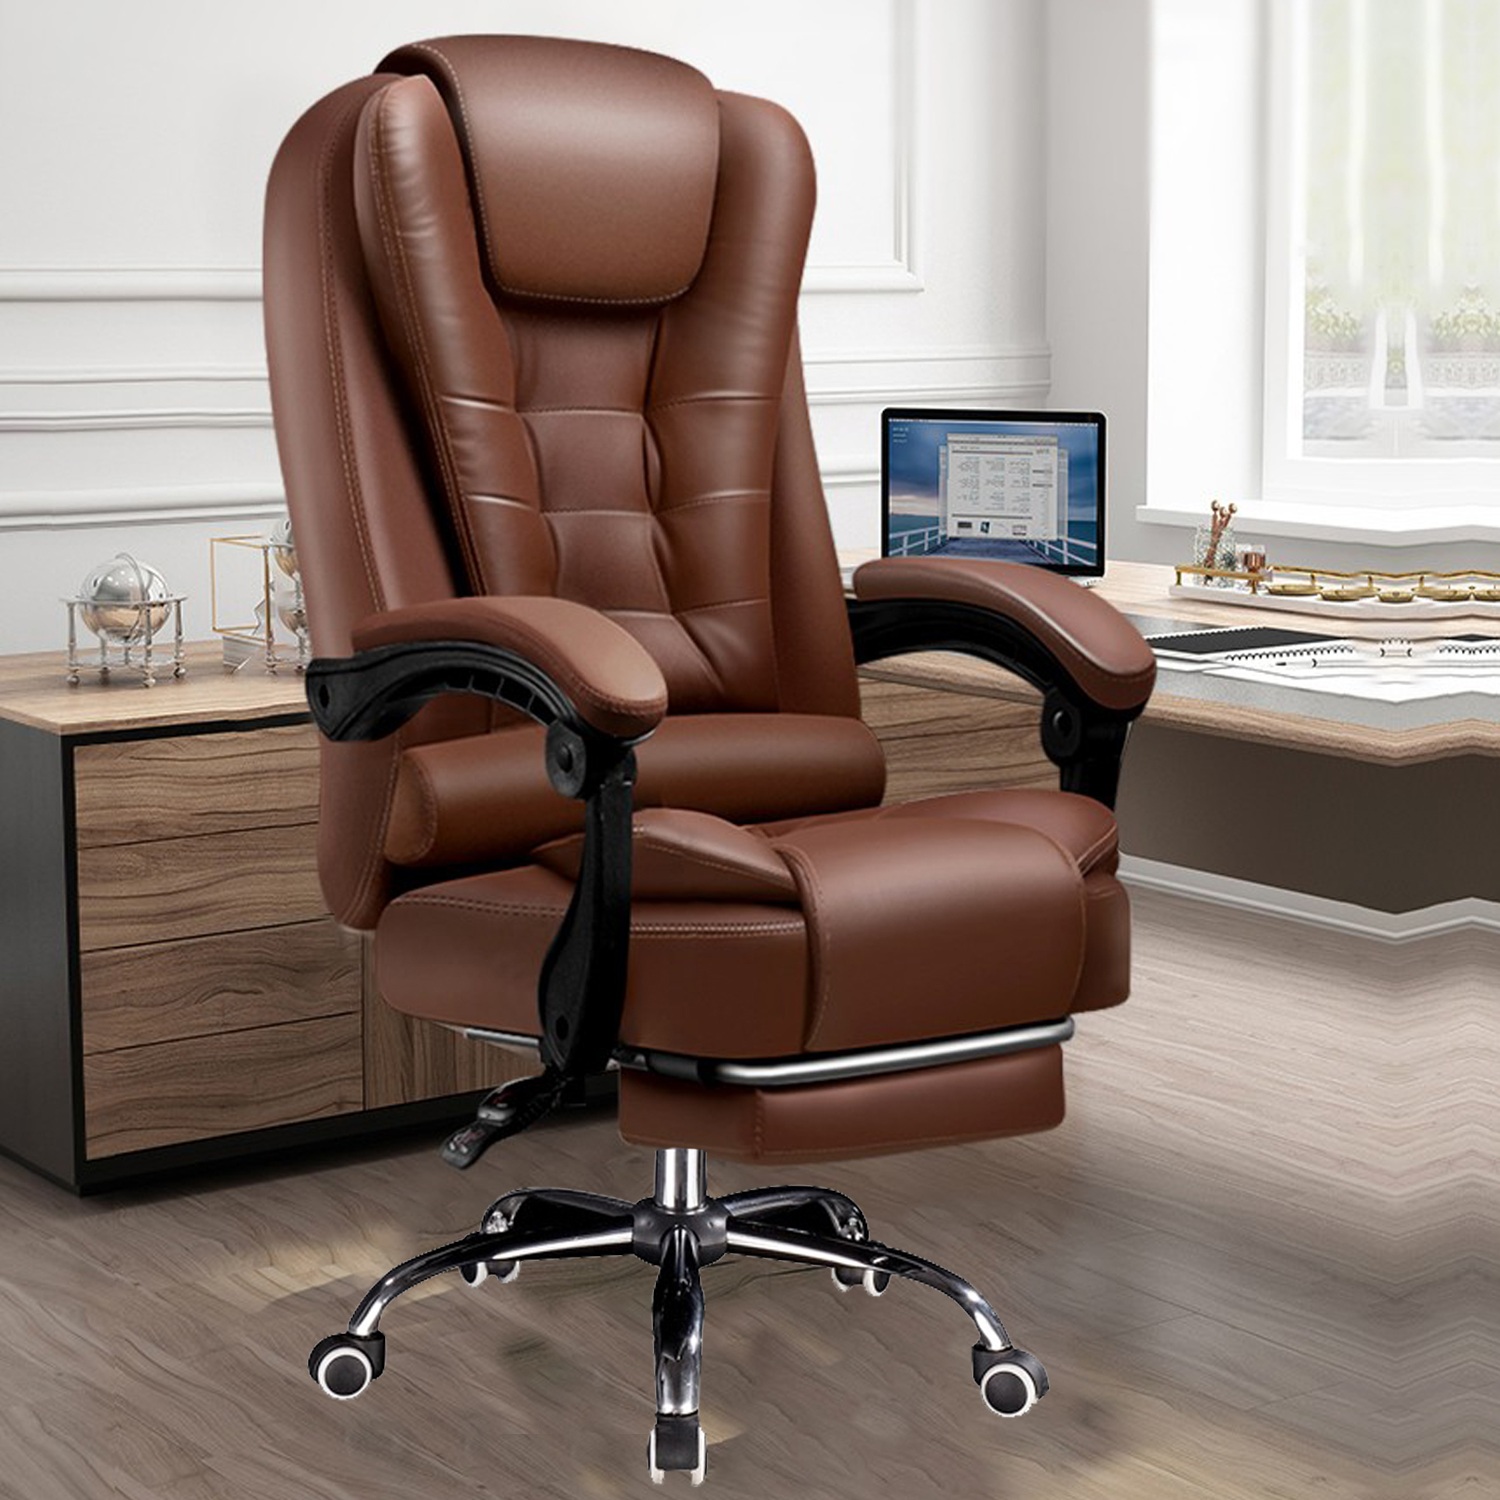 オフィスチェア デスクチェア パソコンチェア 360度回転 社長椅子 連動型肘掛け 昇降機能 肉厚座面 収納式フットレスト リクライニング